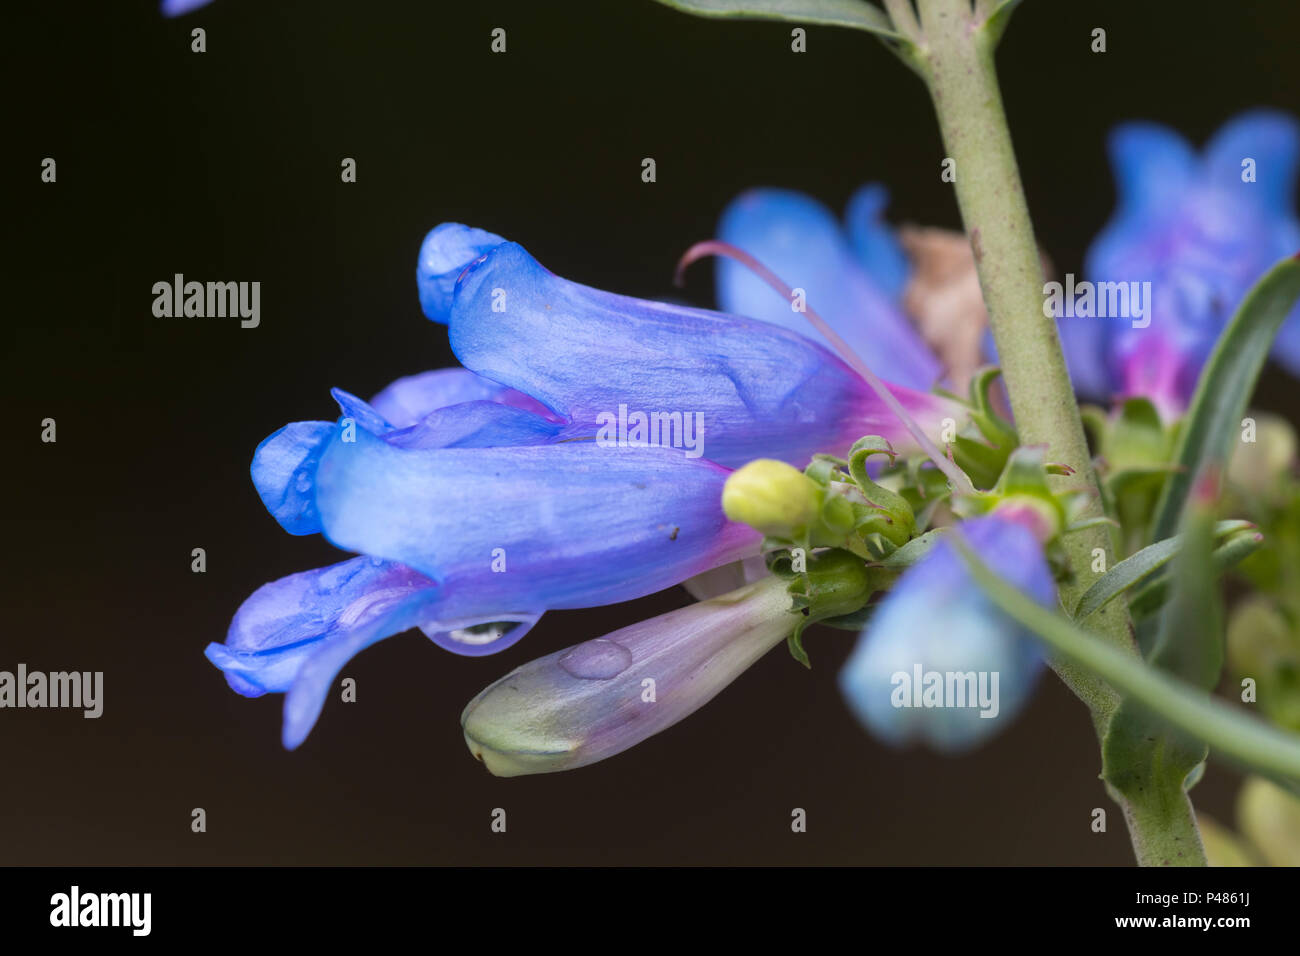 Buen azul flores tubulares de la floración verano foothill, Penstemon penstemon heterophyllus 'Electric Blue' Foto de stock